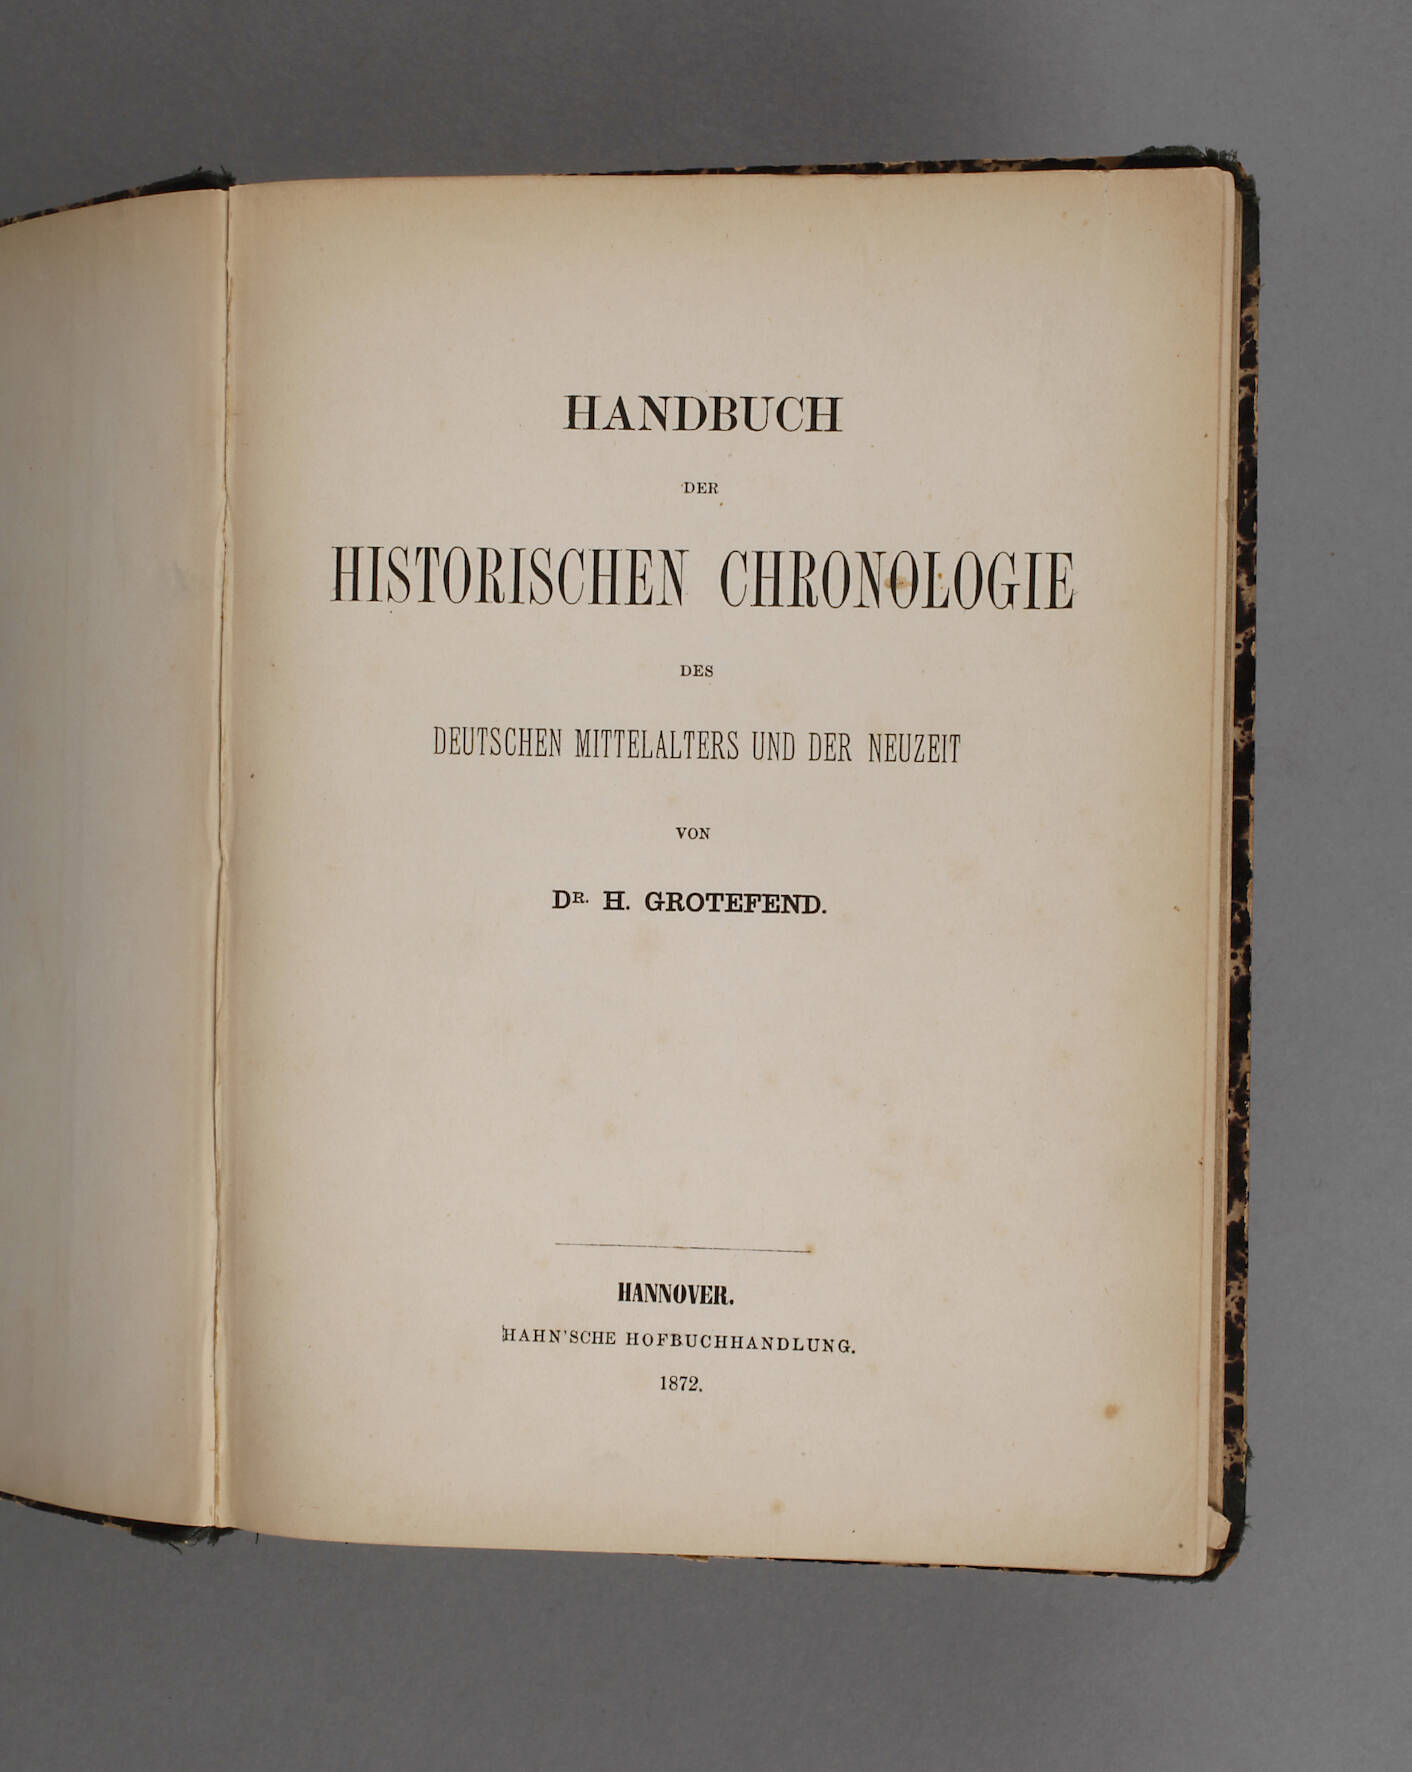 Handbuch der Historischen Chronologie